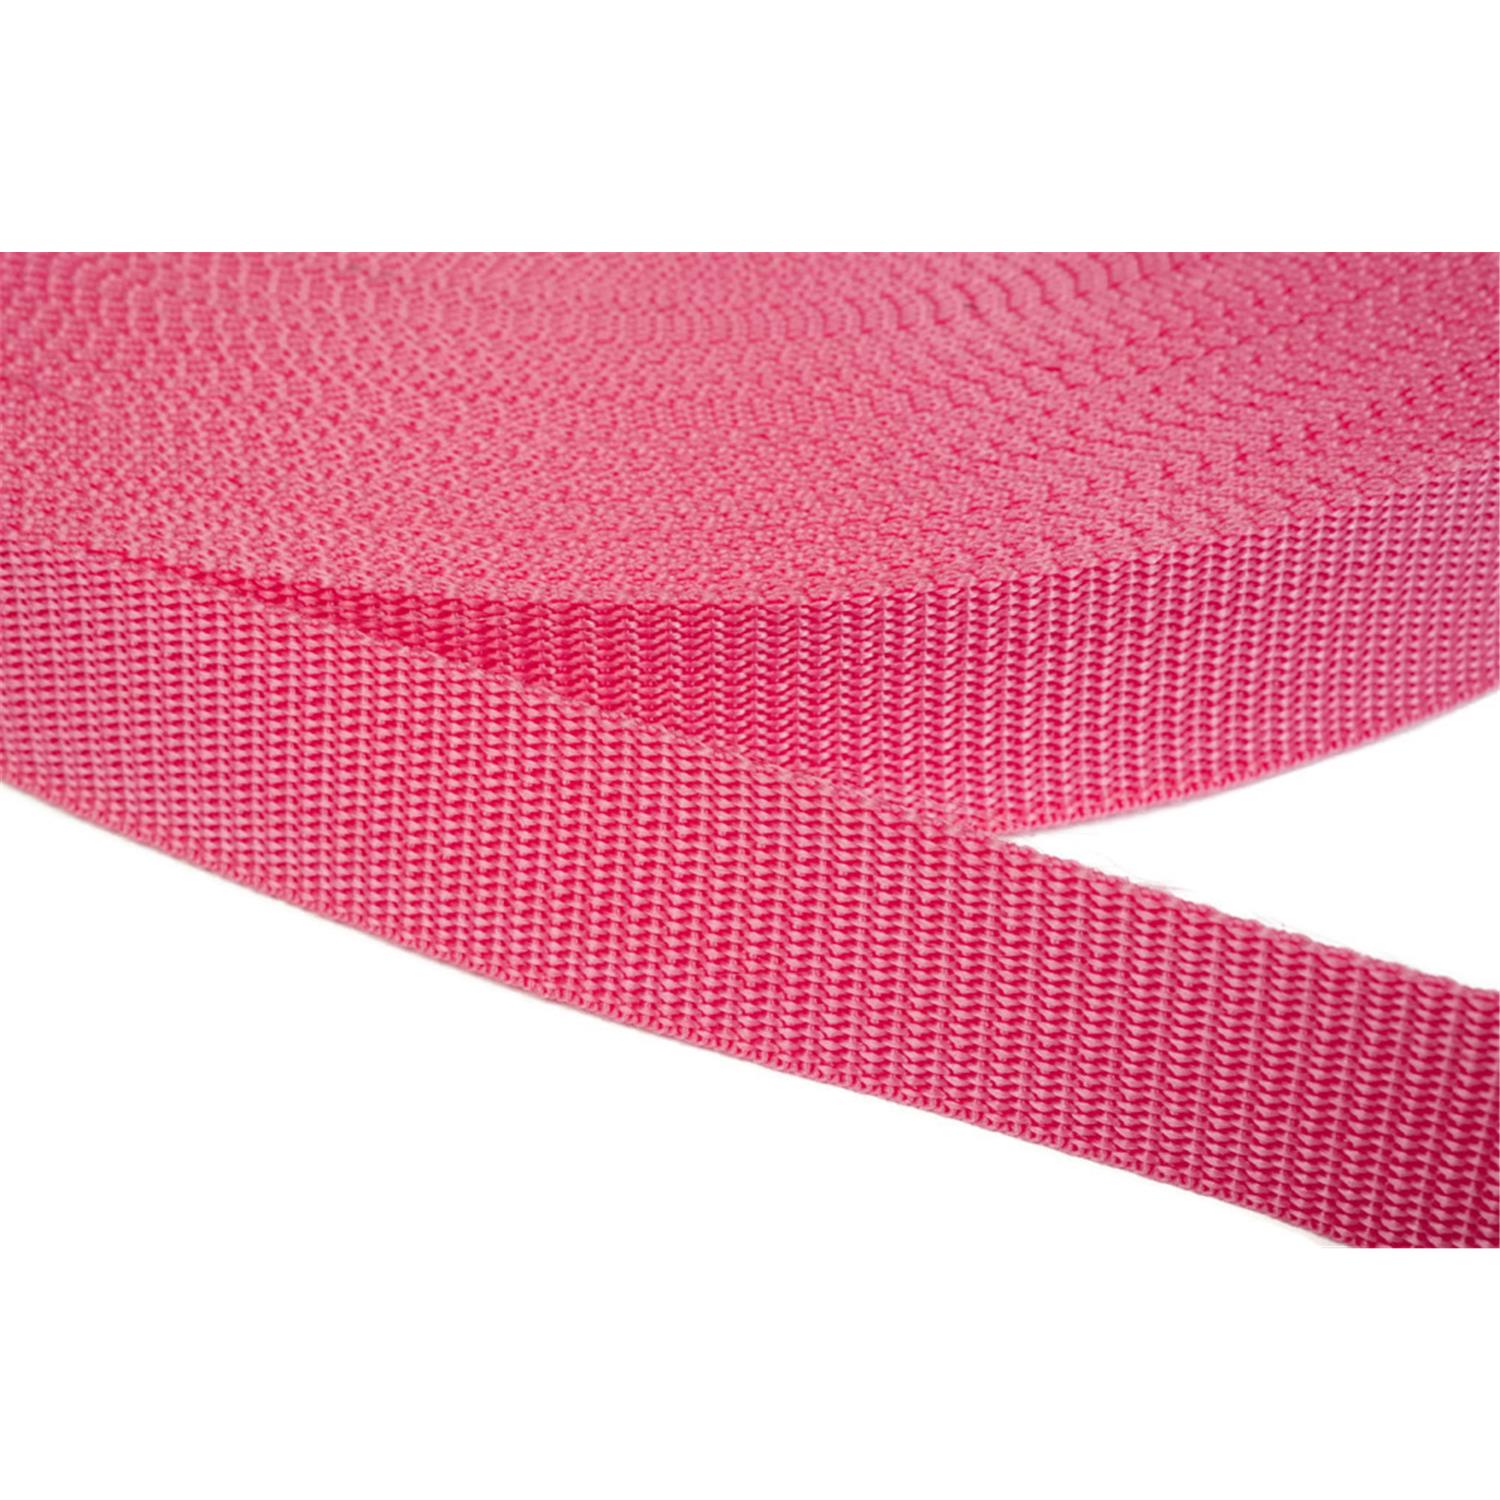 Gurtband 25mm breit aus Polypropylen in 41 Farben 13 - pink 50 Meter